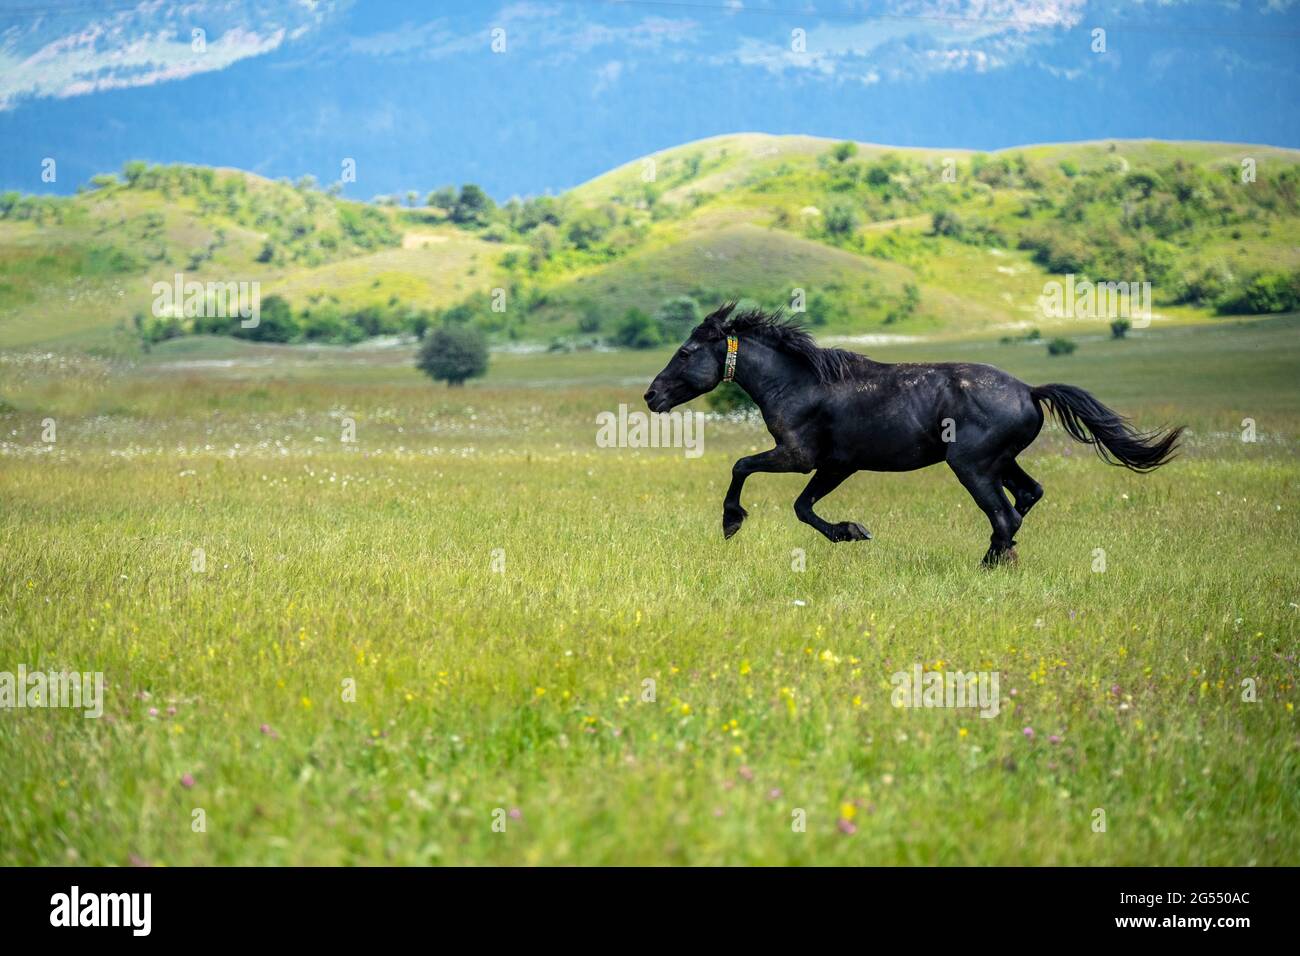 Đây là một bức ảnh tuyệt đẹp của một con ngựa đen chạy bộ qua đồng cỏ xanh tươi rộng lớn với dãy núi tuyệt đẹp và những đám mây trắng xóa phía trên. Khi xem bức ảnh này, bạn sẽ cảm nhận được cảm giác gió mát thổi qua, tất cả những lo lắng sẽ tan biến. Hãy cùng nhau khám phá vẻ đẹp của tự nhiên và đắm mình trong cảm giác yên bình.